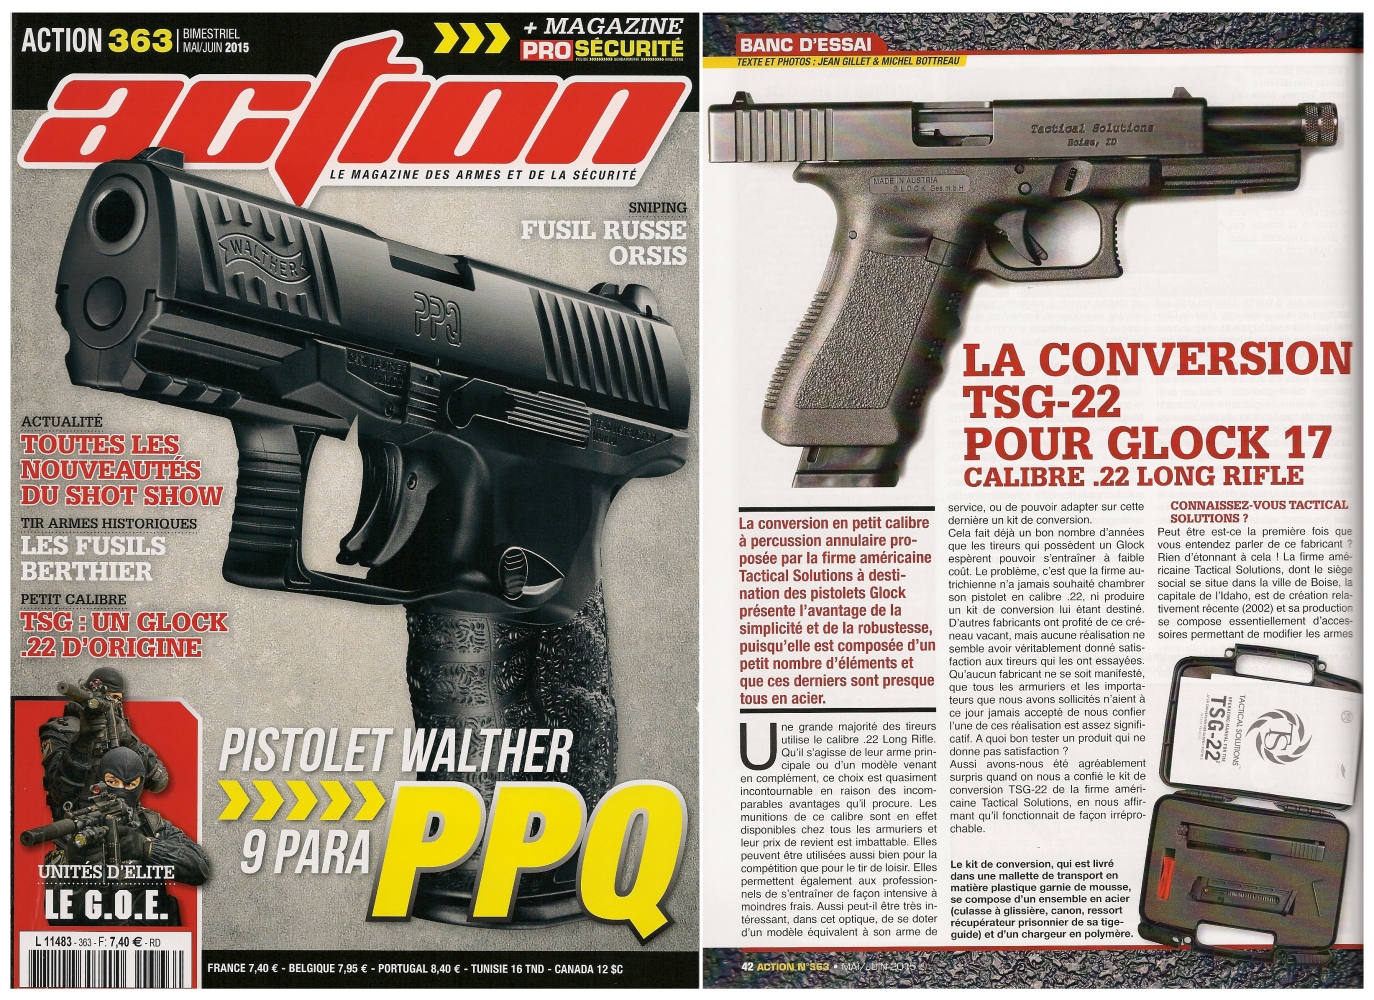 Le banc d’essai de la conversion TSG-22 pour Glock 17 a été publié sur 6 pages dans le magazine Action n°363 (mai/juin 2015).